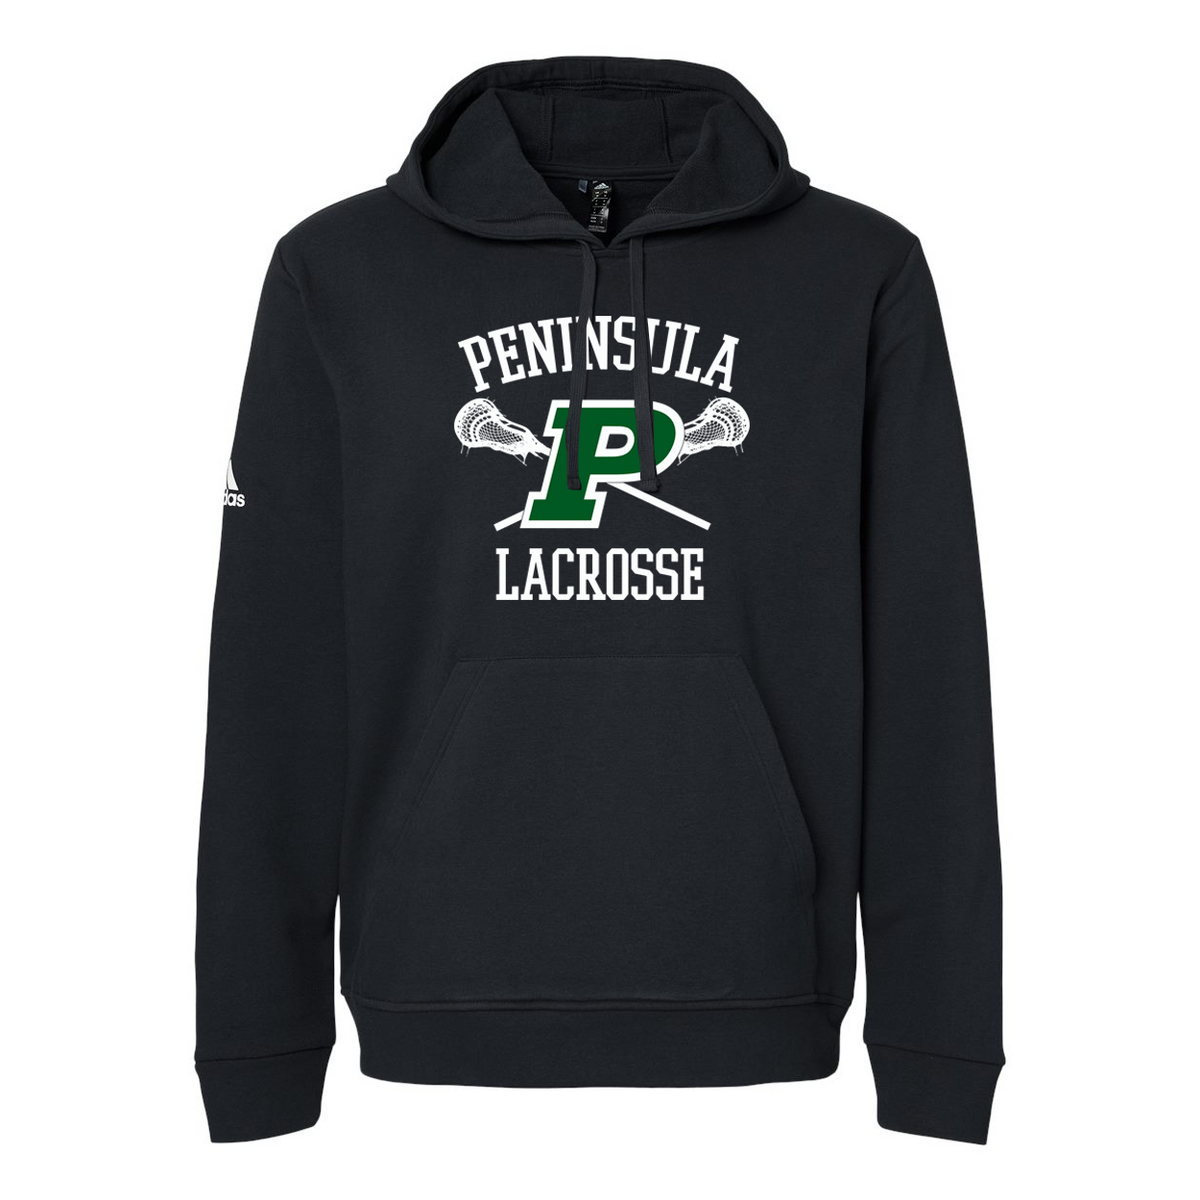 Peninsula Lacrosse Adidas Fleece Hooded Sweatshirt